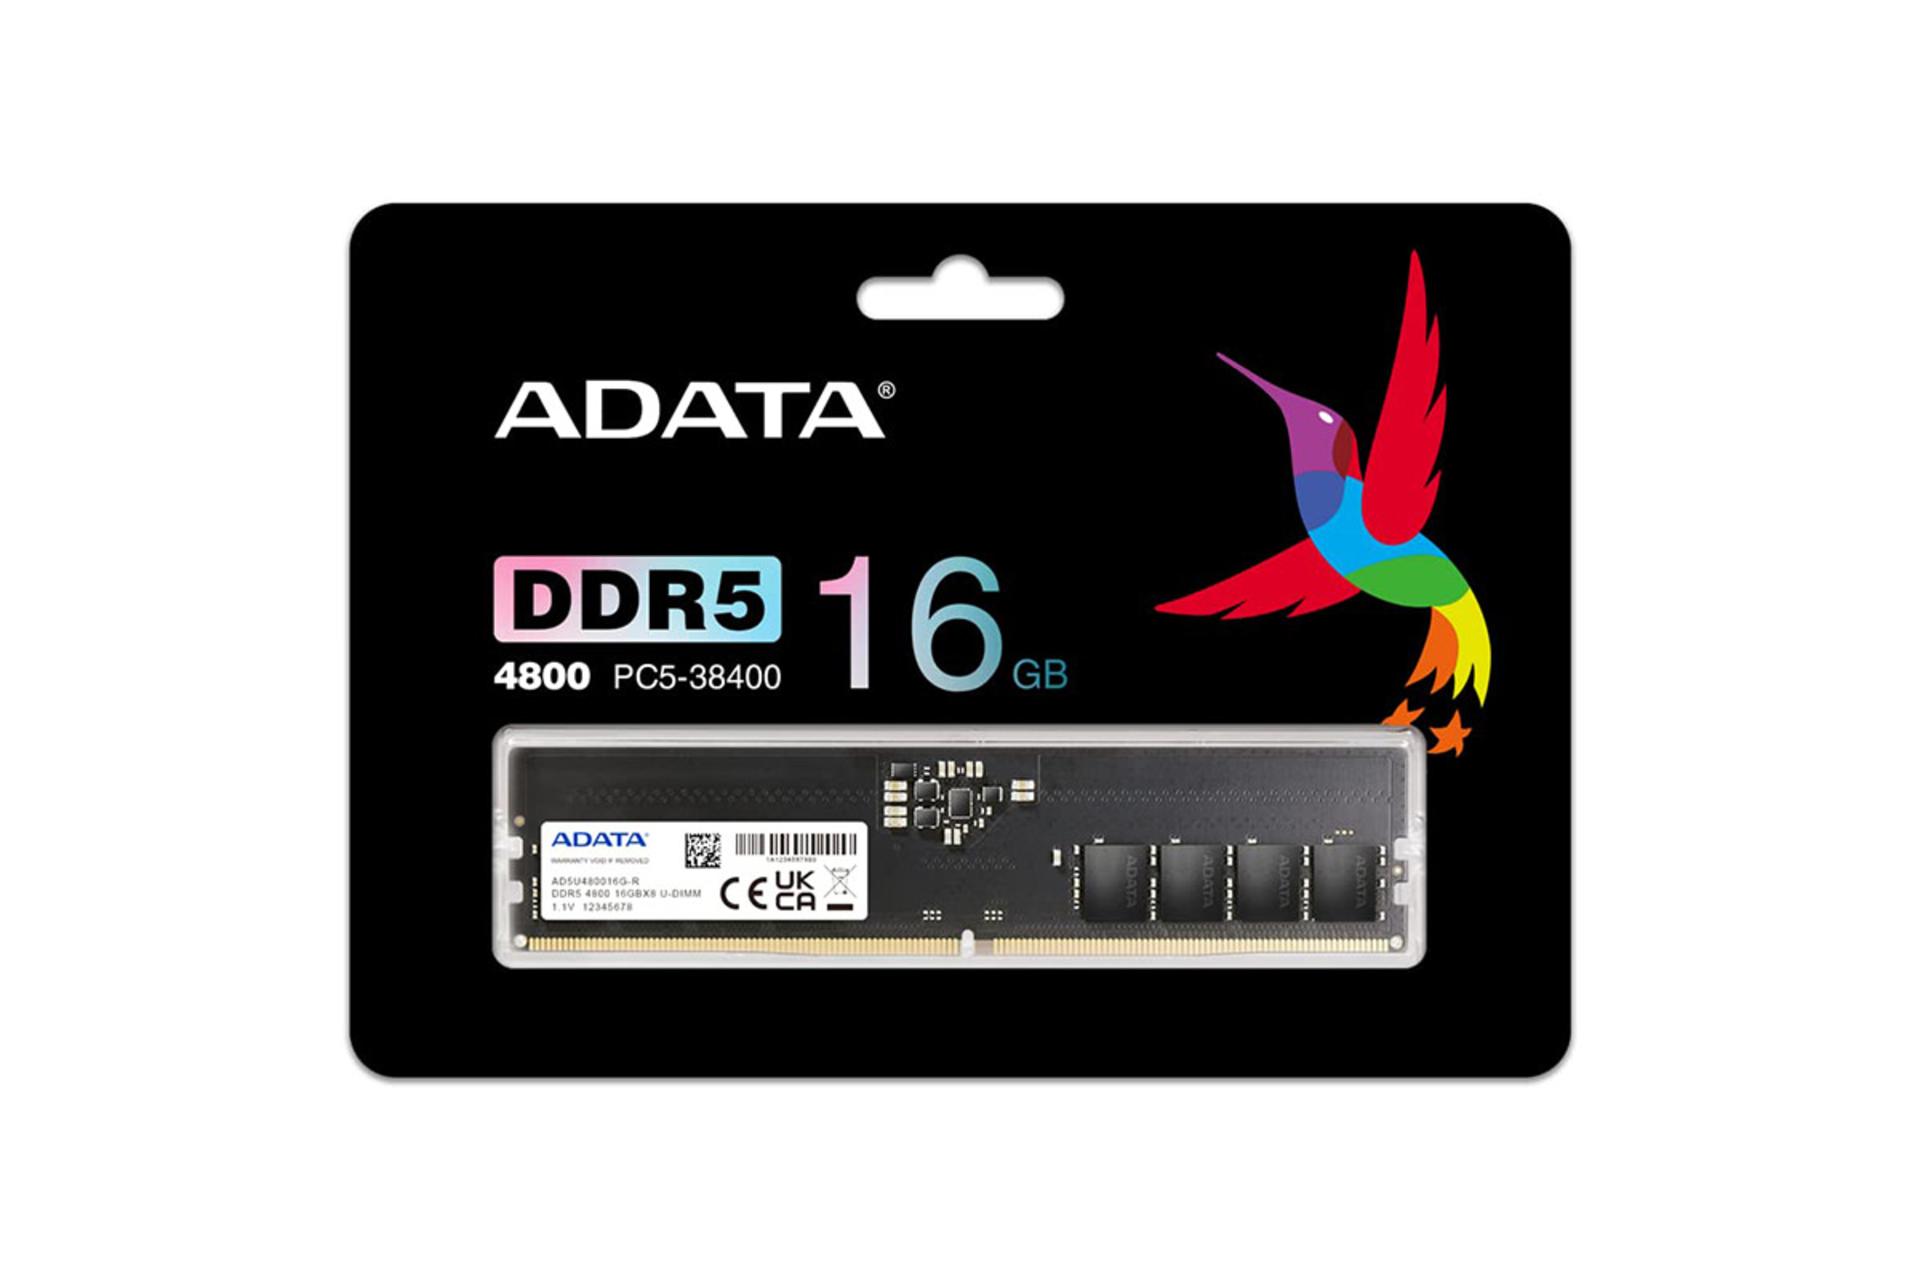 رم ای دیتا Premier ظرفیت 16 گیگابایت از نوع DDR5-4800 بسته بندی